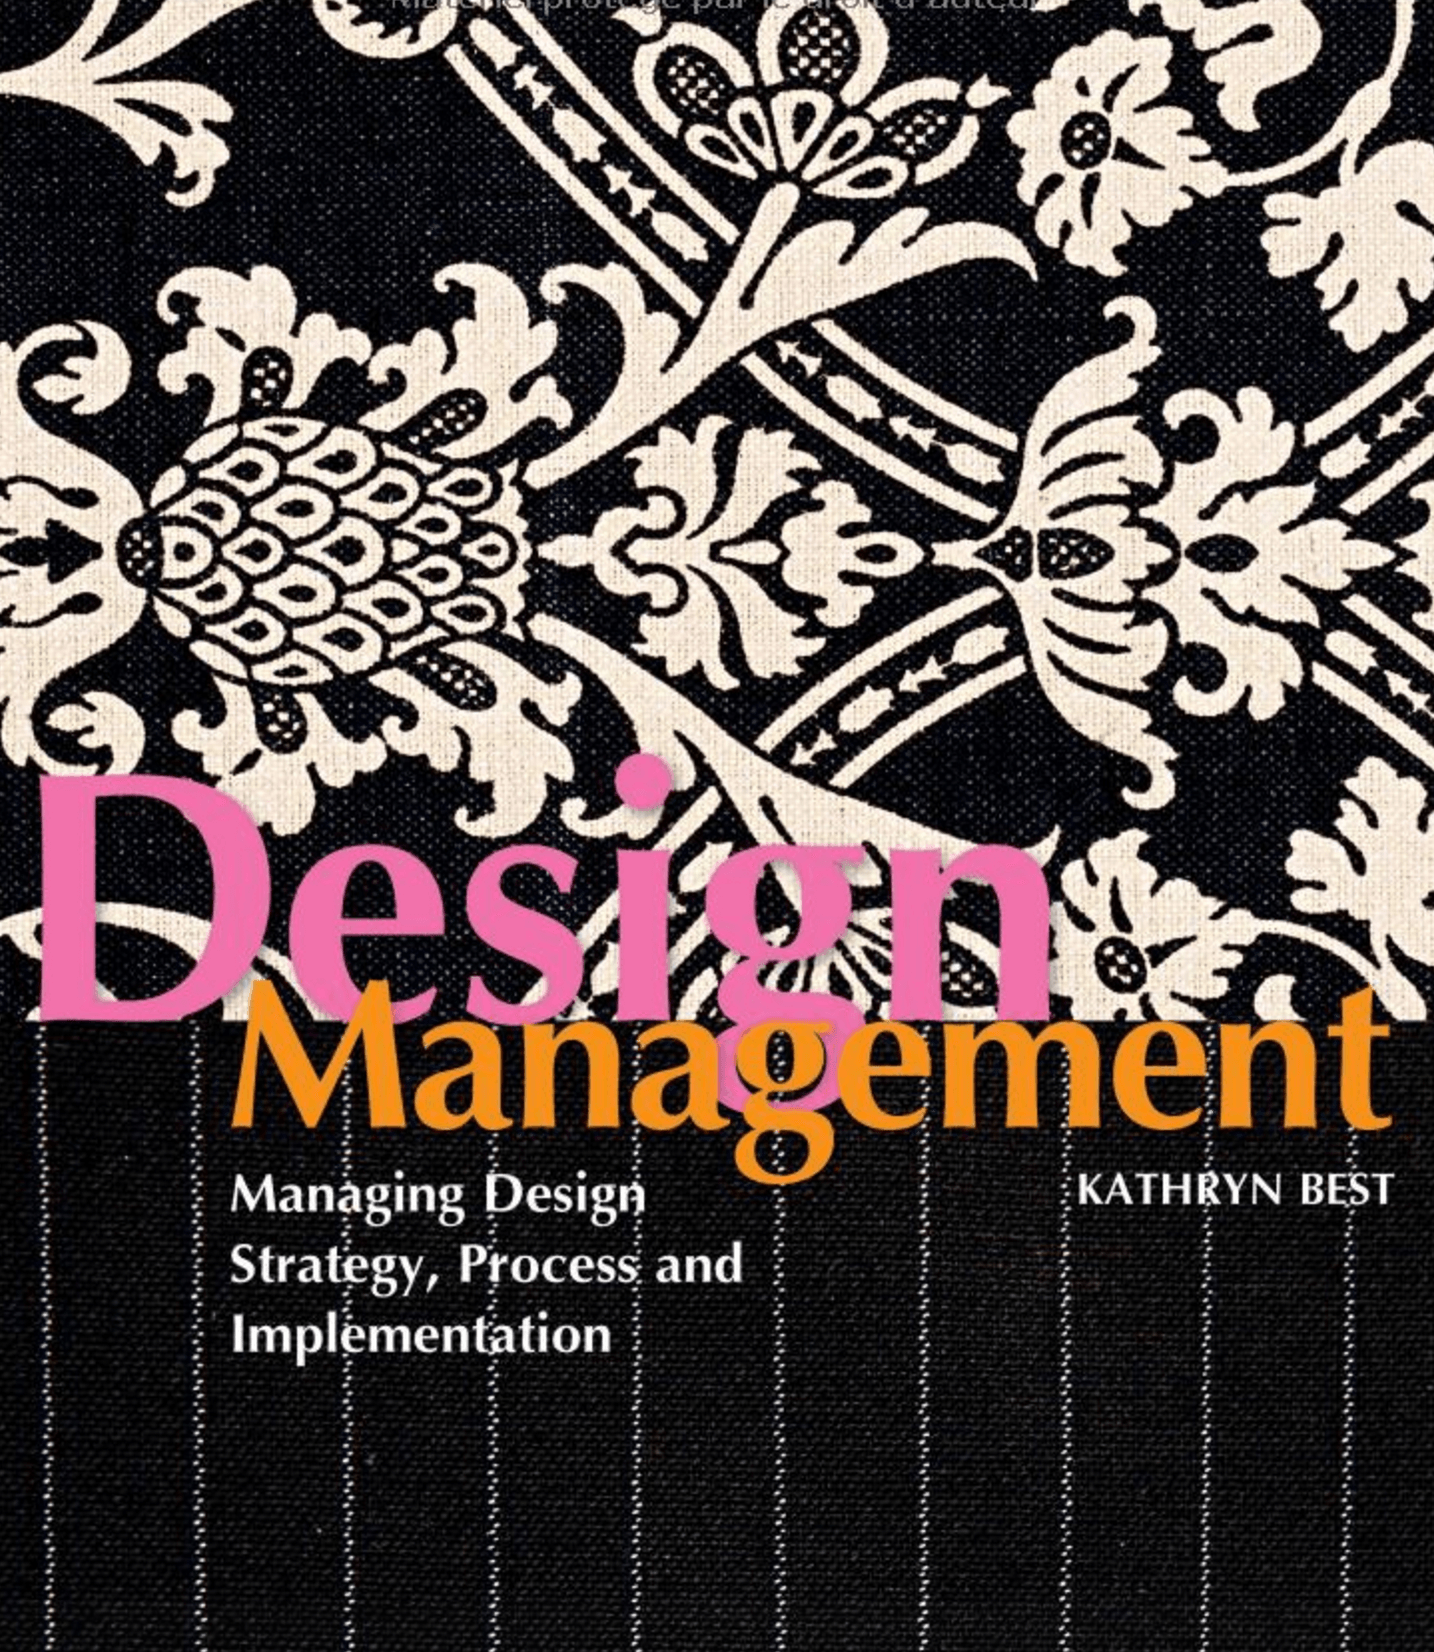 Read This: Design Management